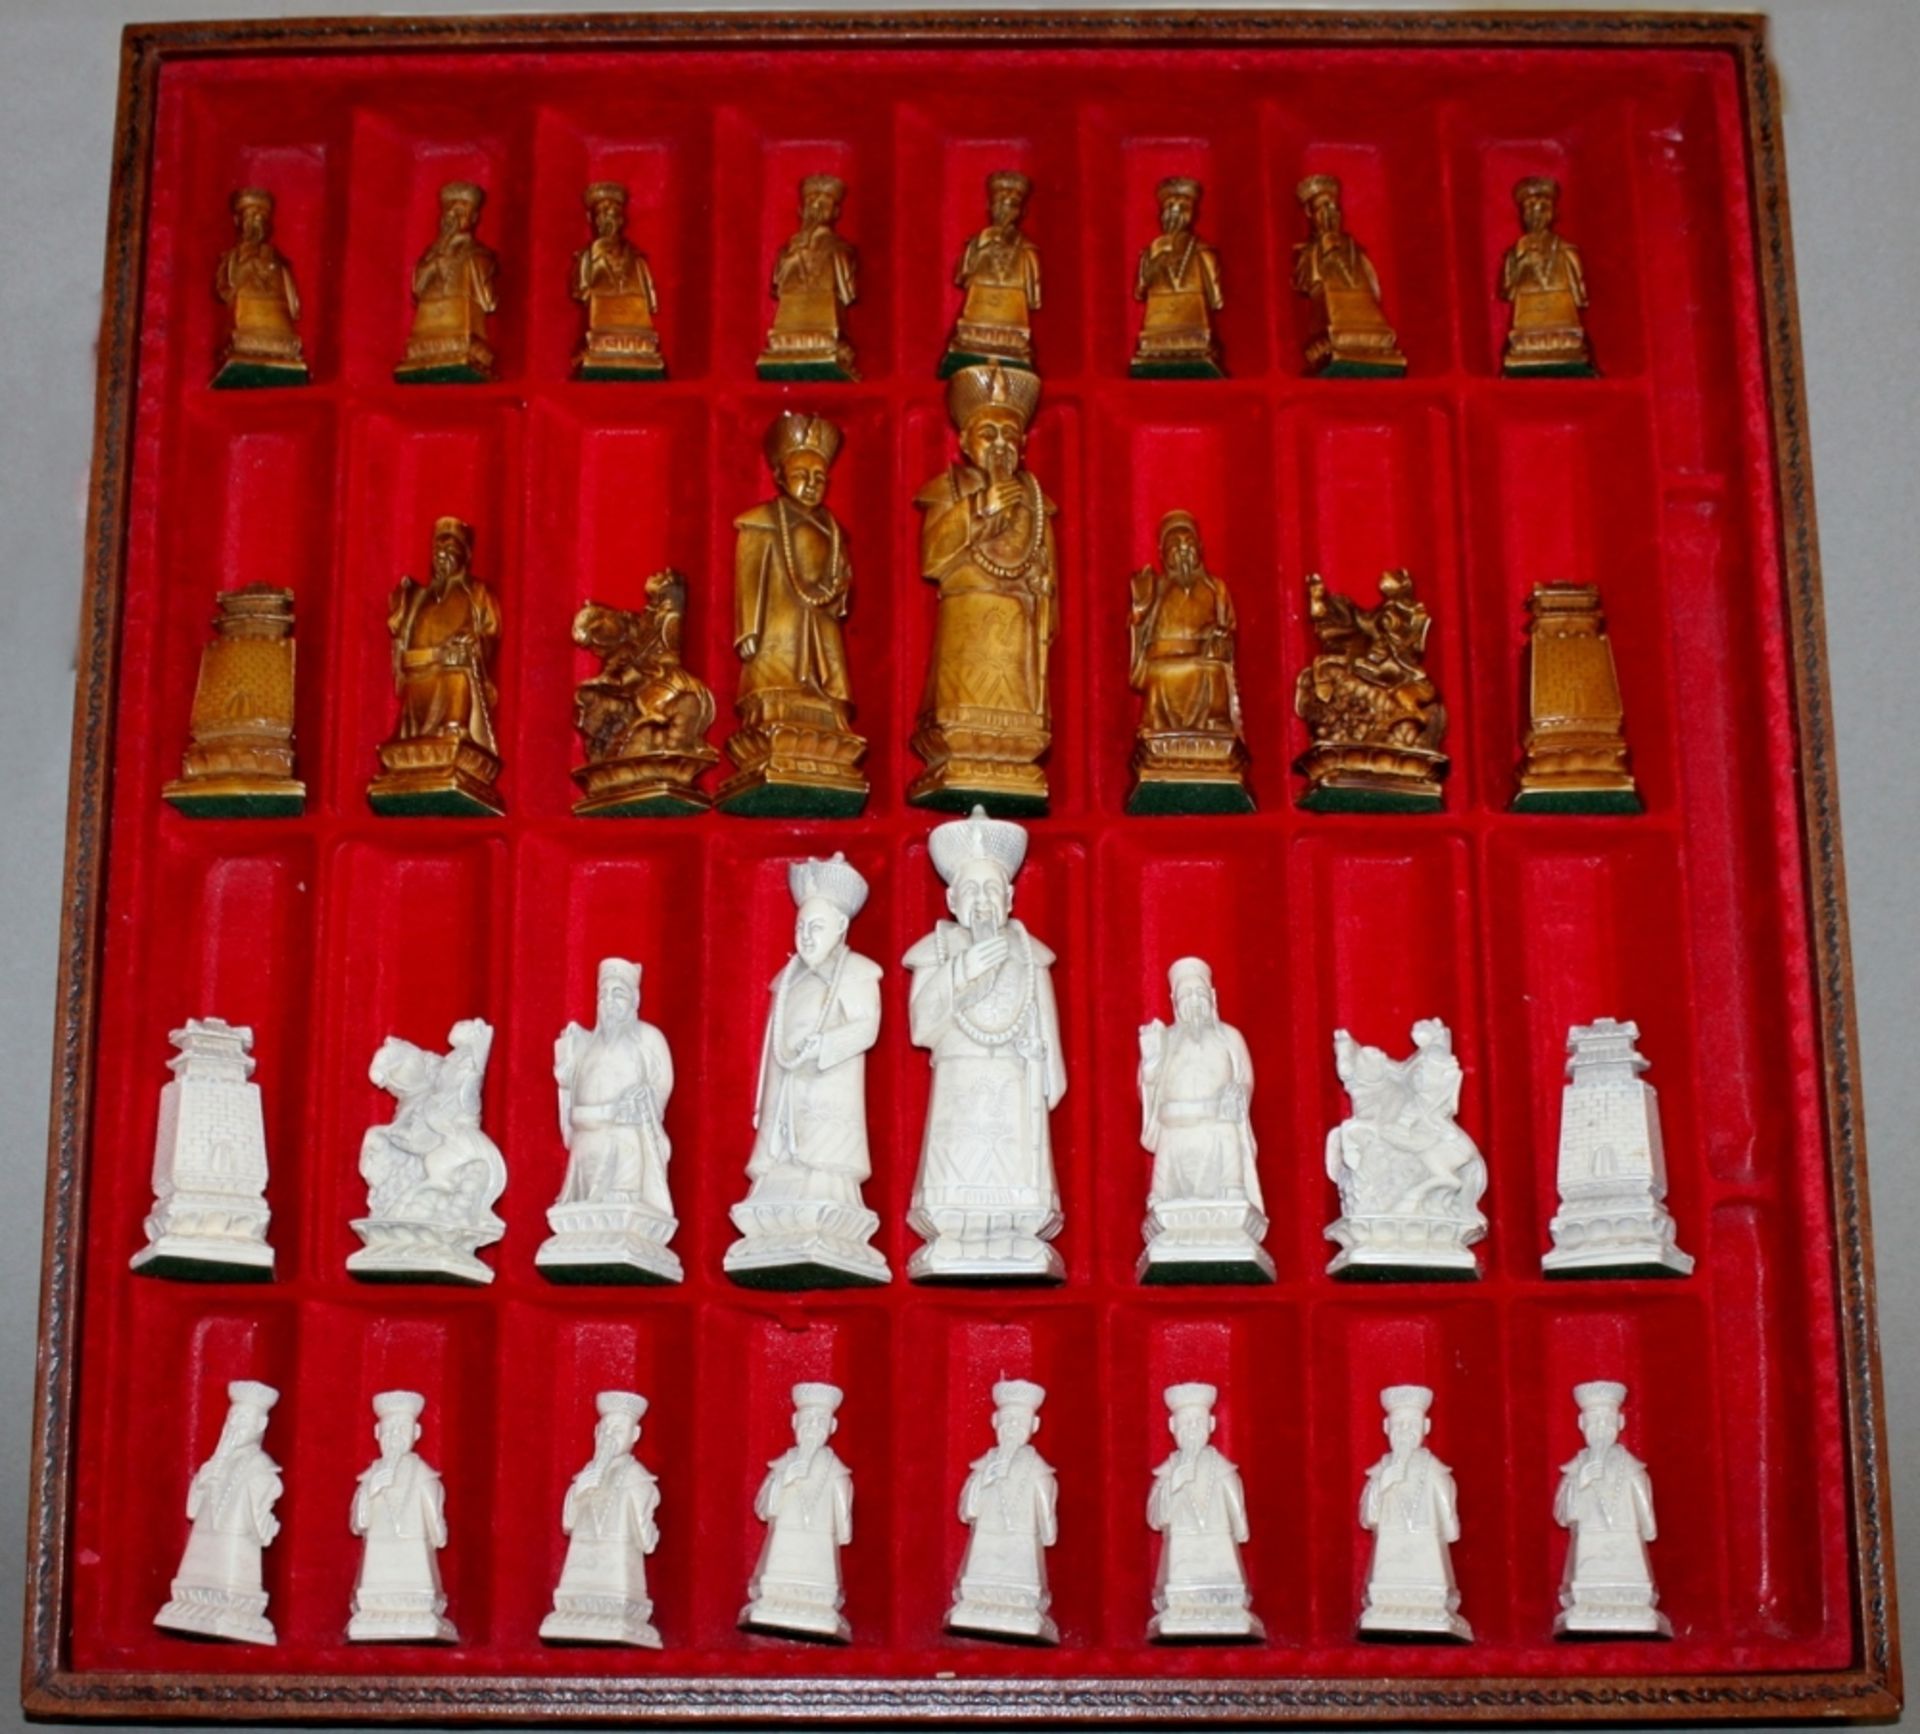 Asien. China. Schachspiel aus Kunststoff. Nachbildung eines historischen Spiels mit den Königen